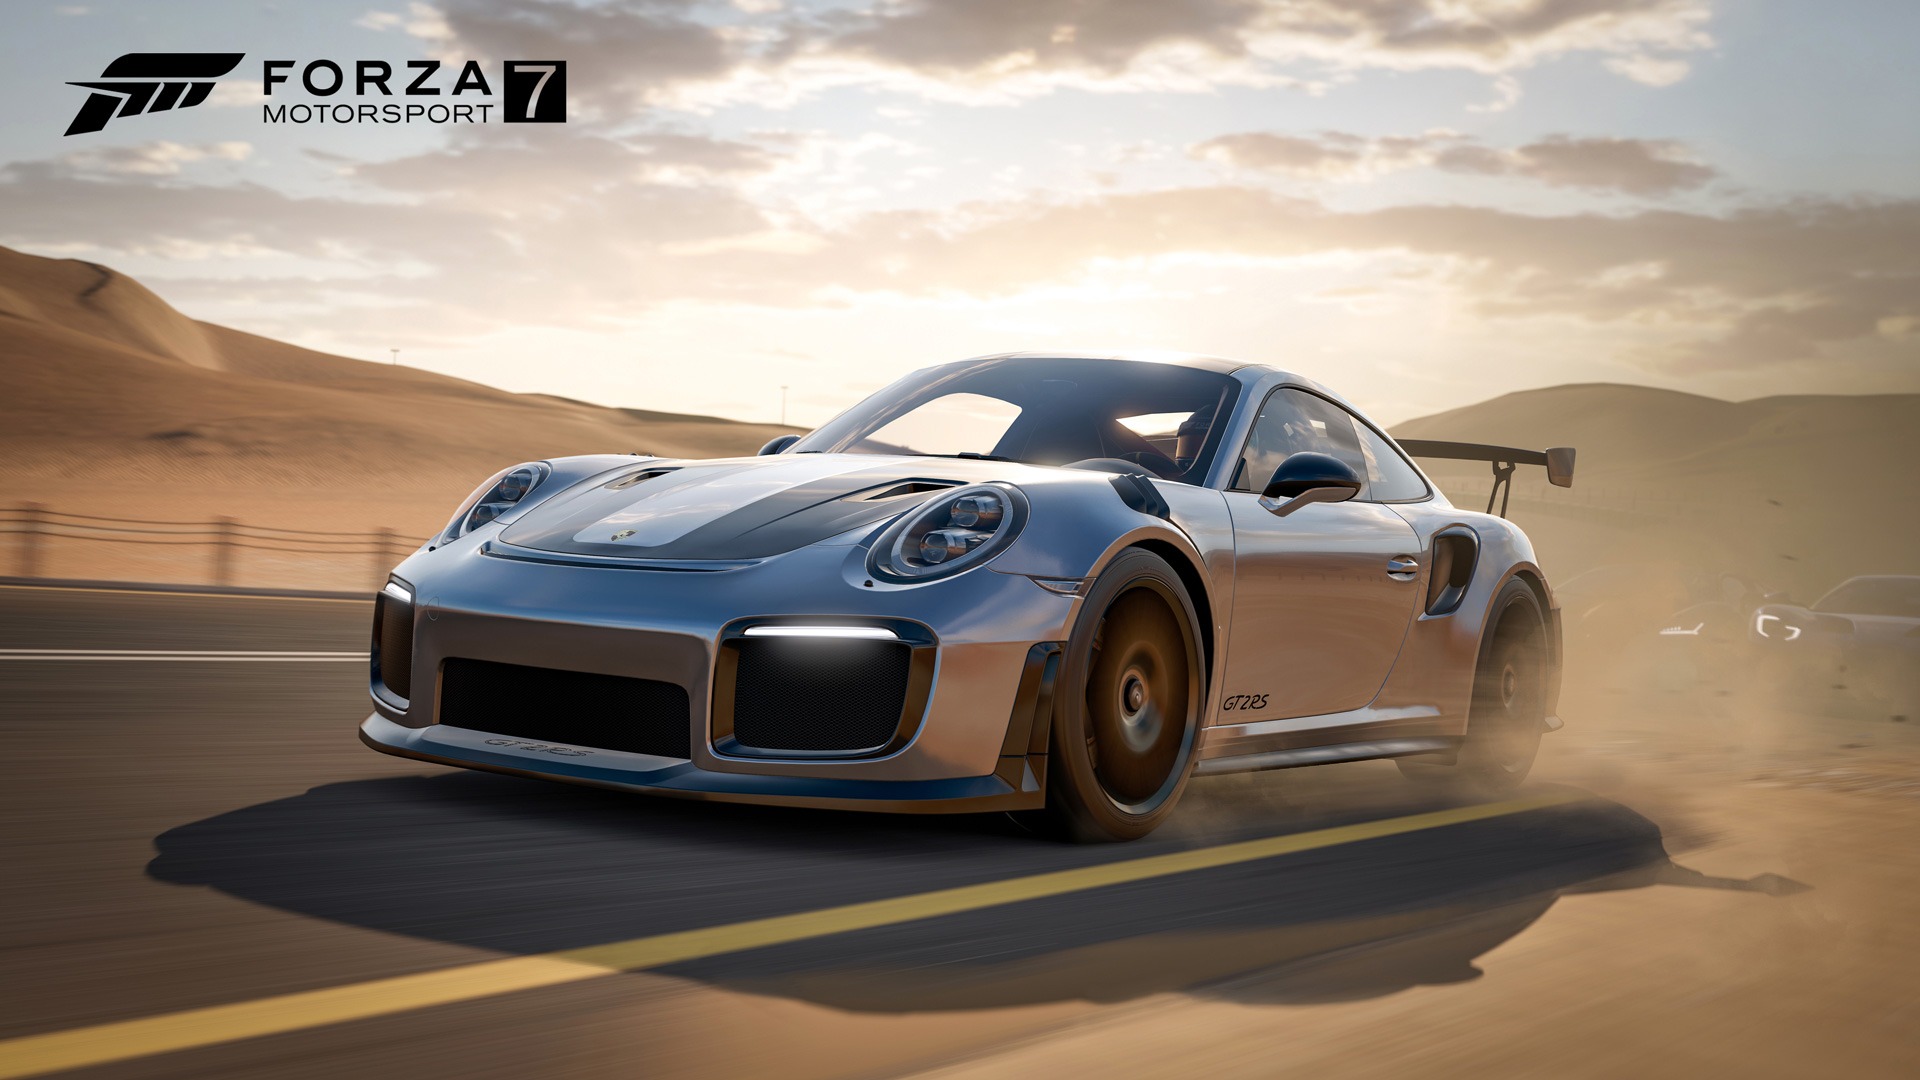 Forza Motorsport 7, análisis del mejor juego de la saga